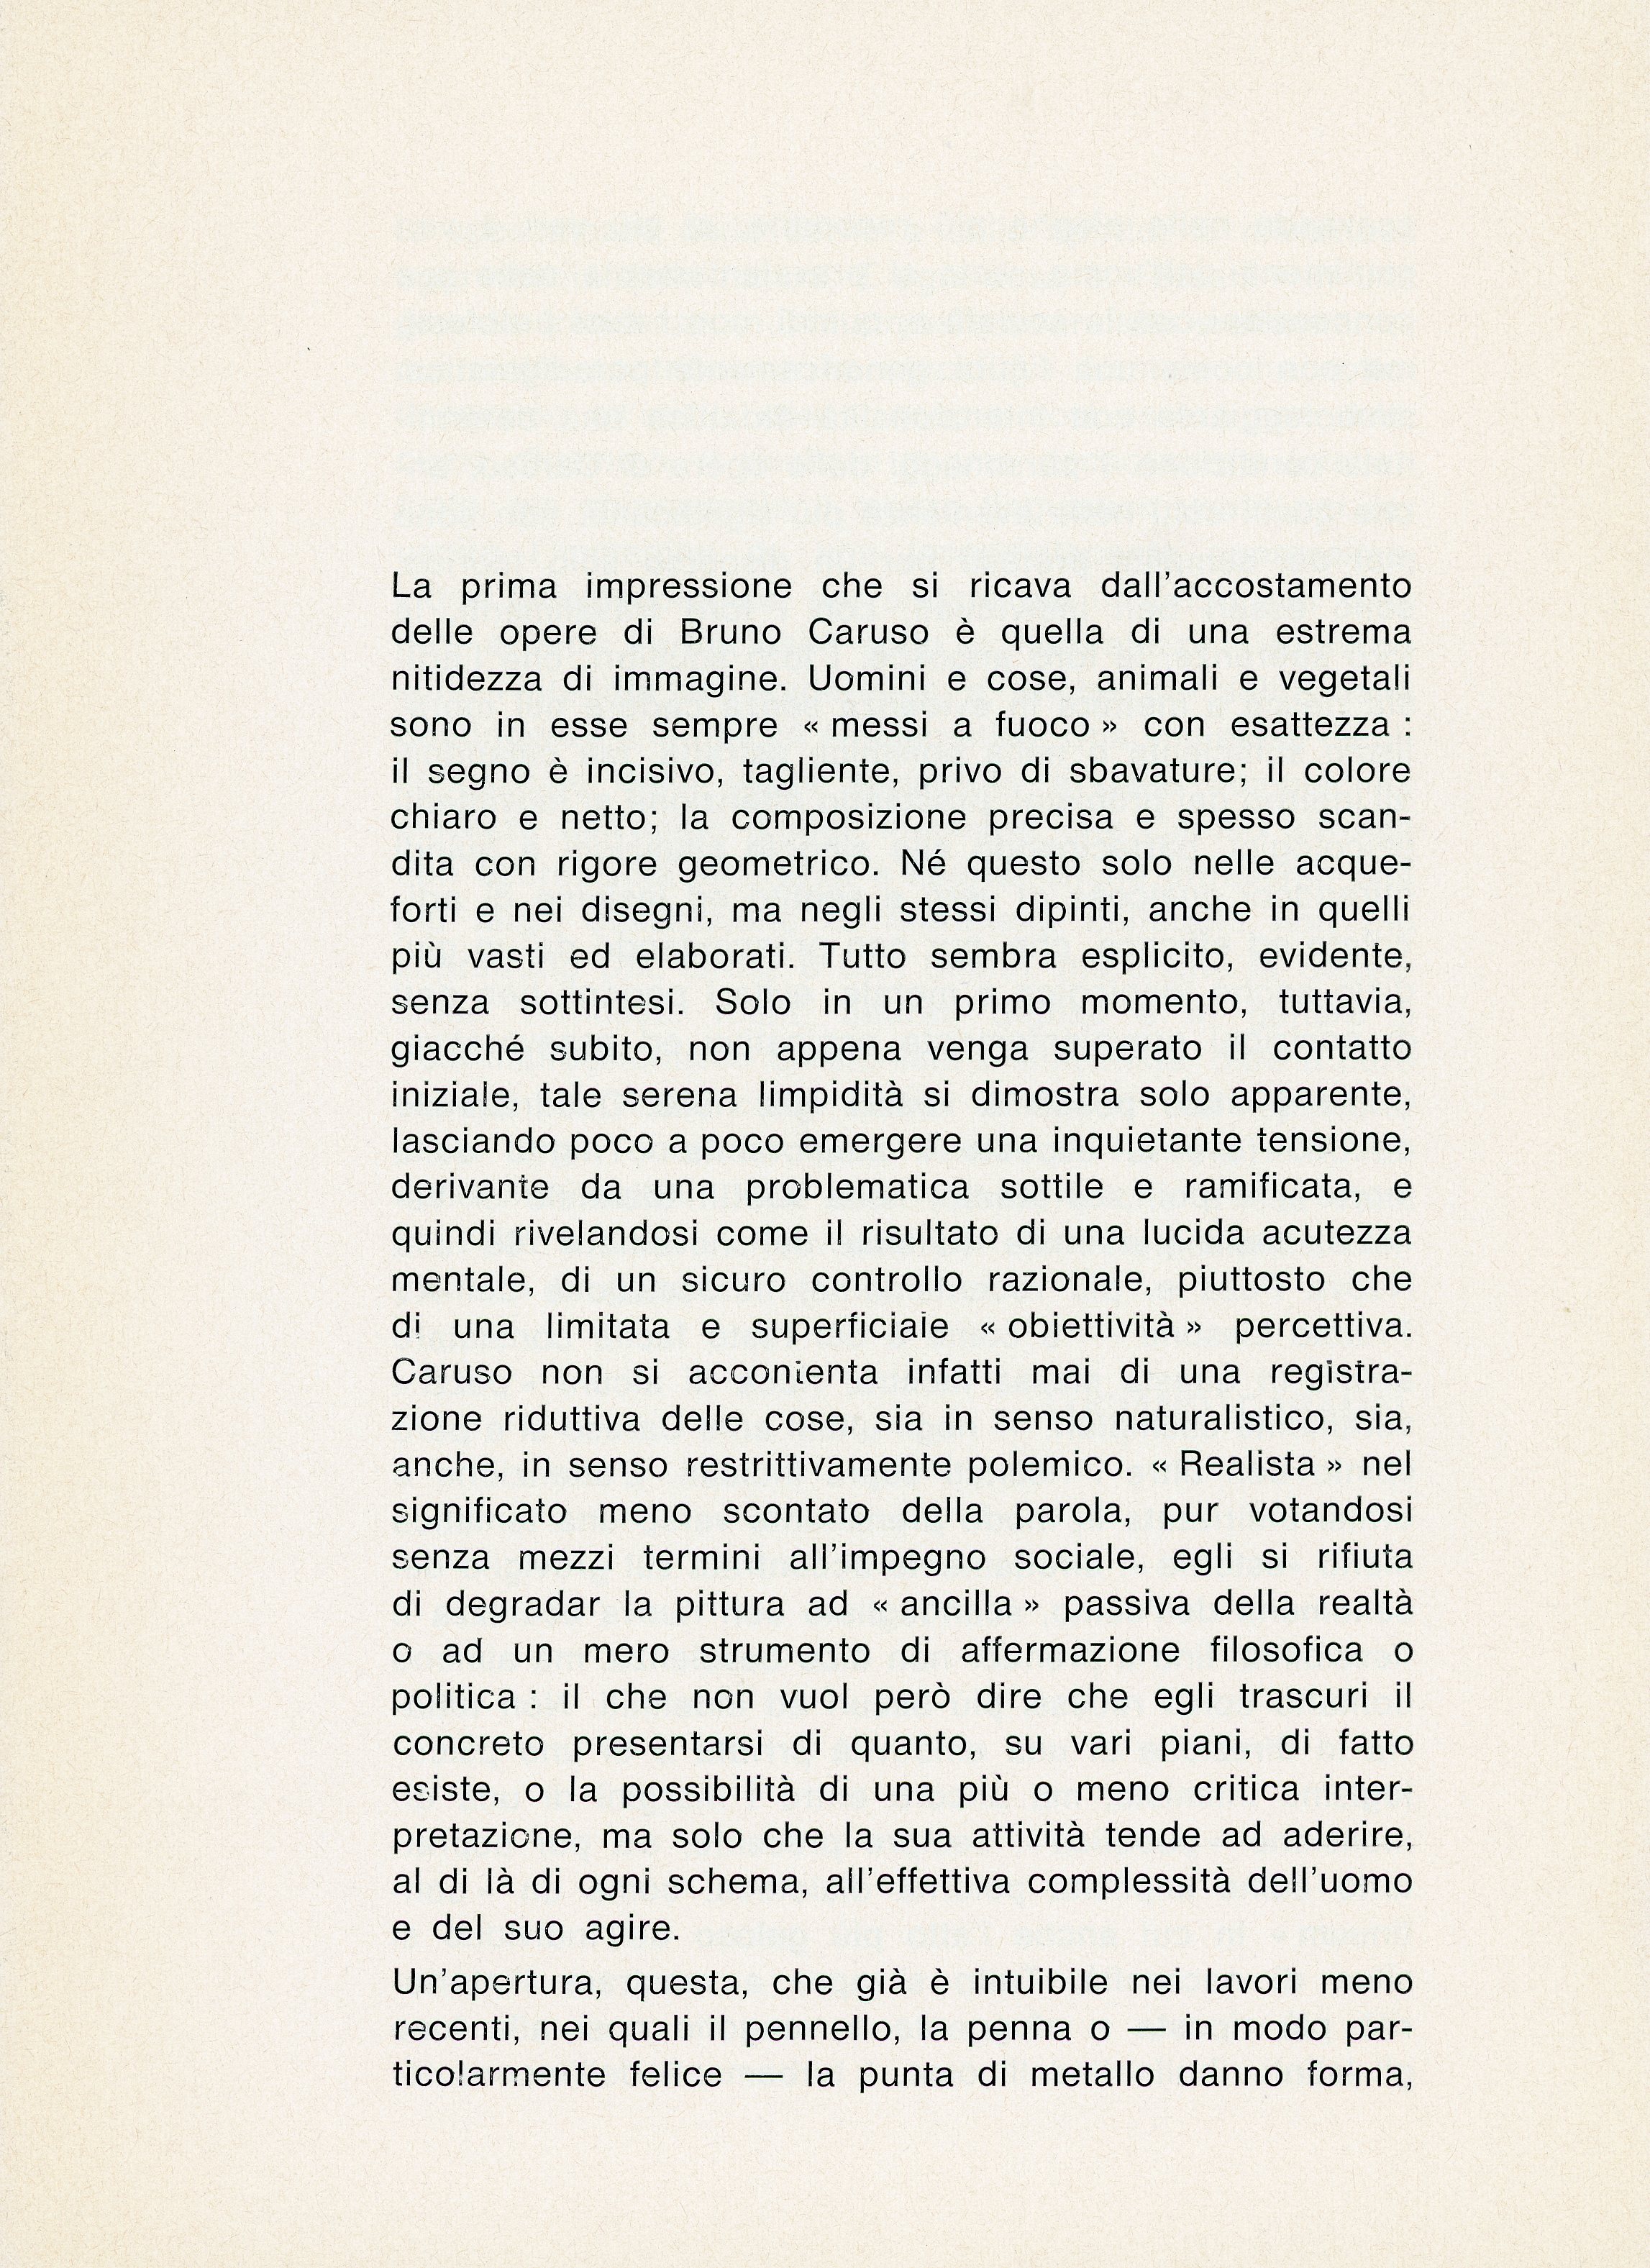 1968-02 La Colonna - Bruno Caruso_04.jpg